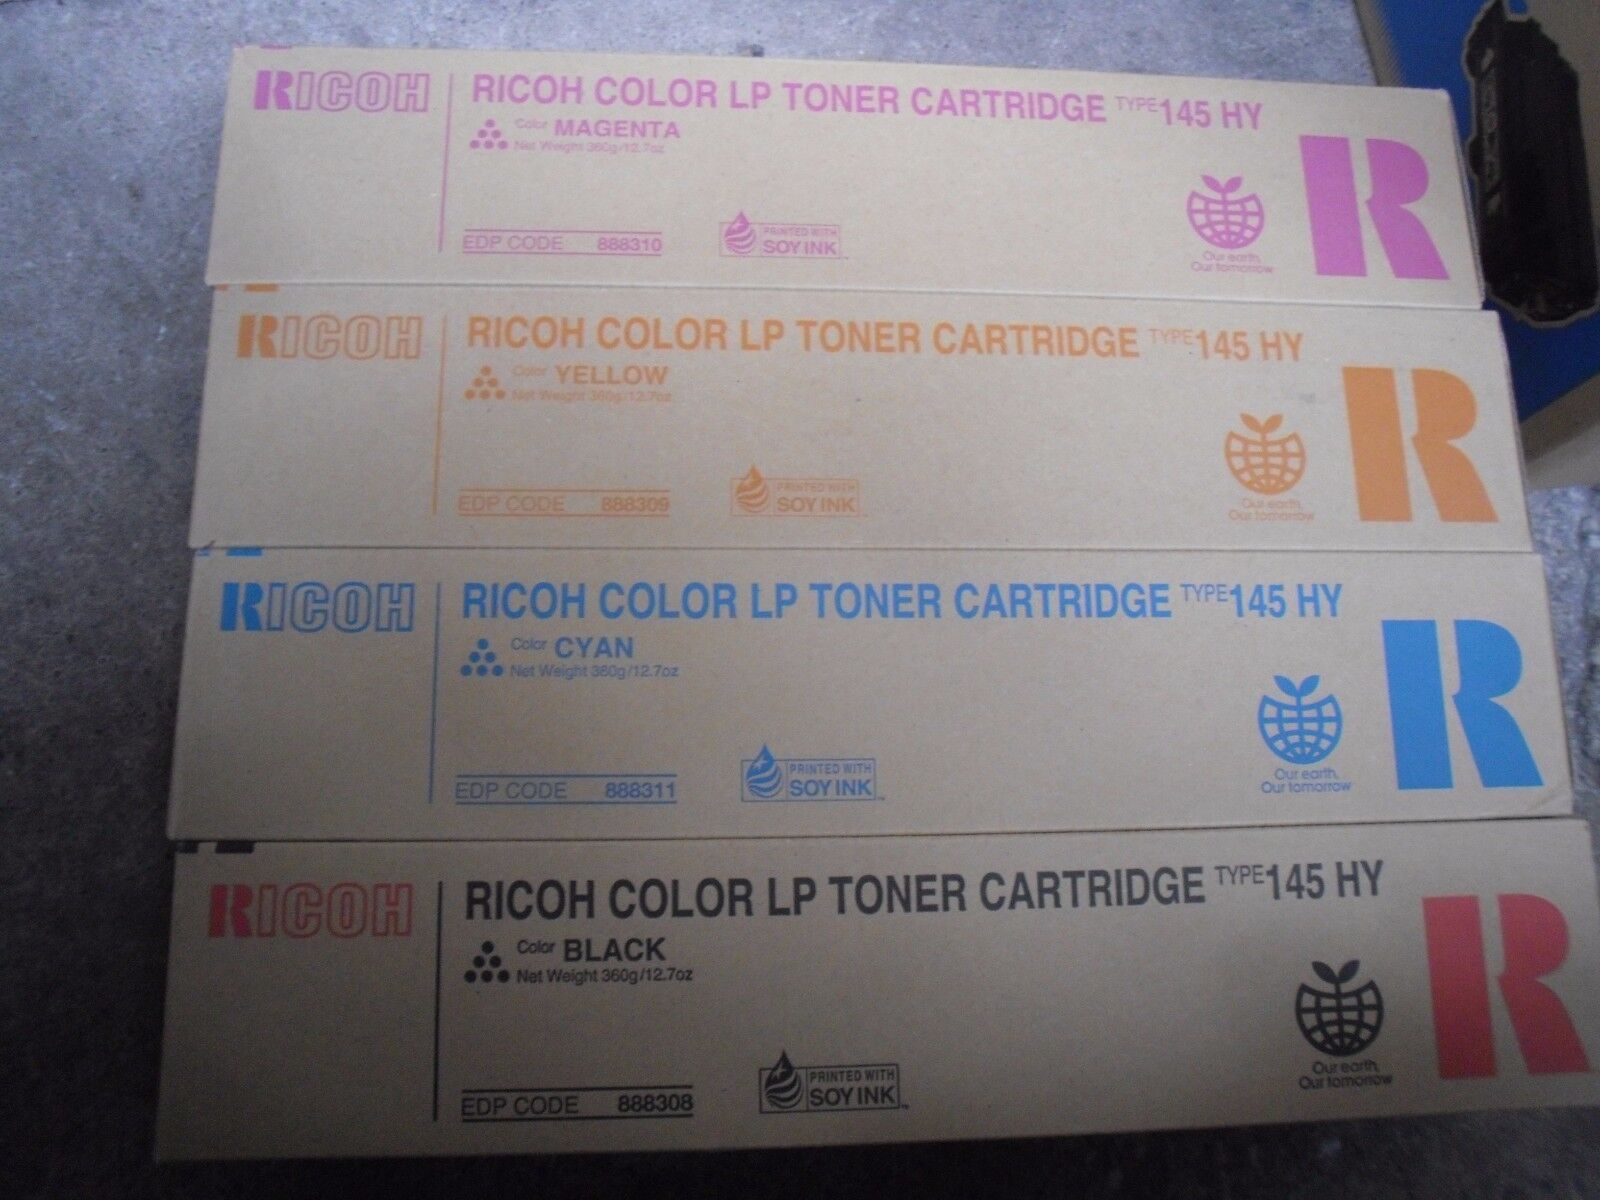 4 Hi-Yd Toner Genuine Ricoh Aficio CL4000 C410dn C411dn Printer Type 145 888311